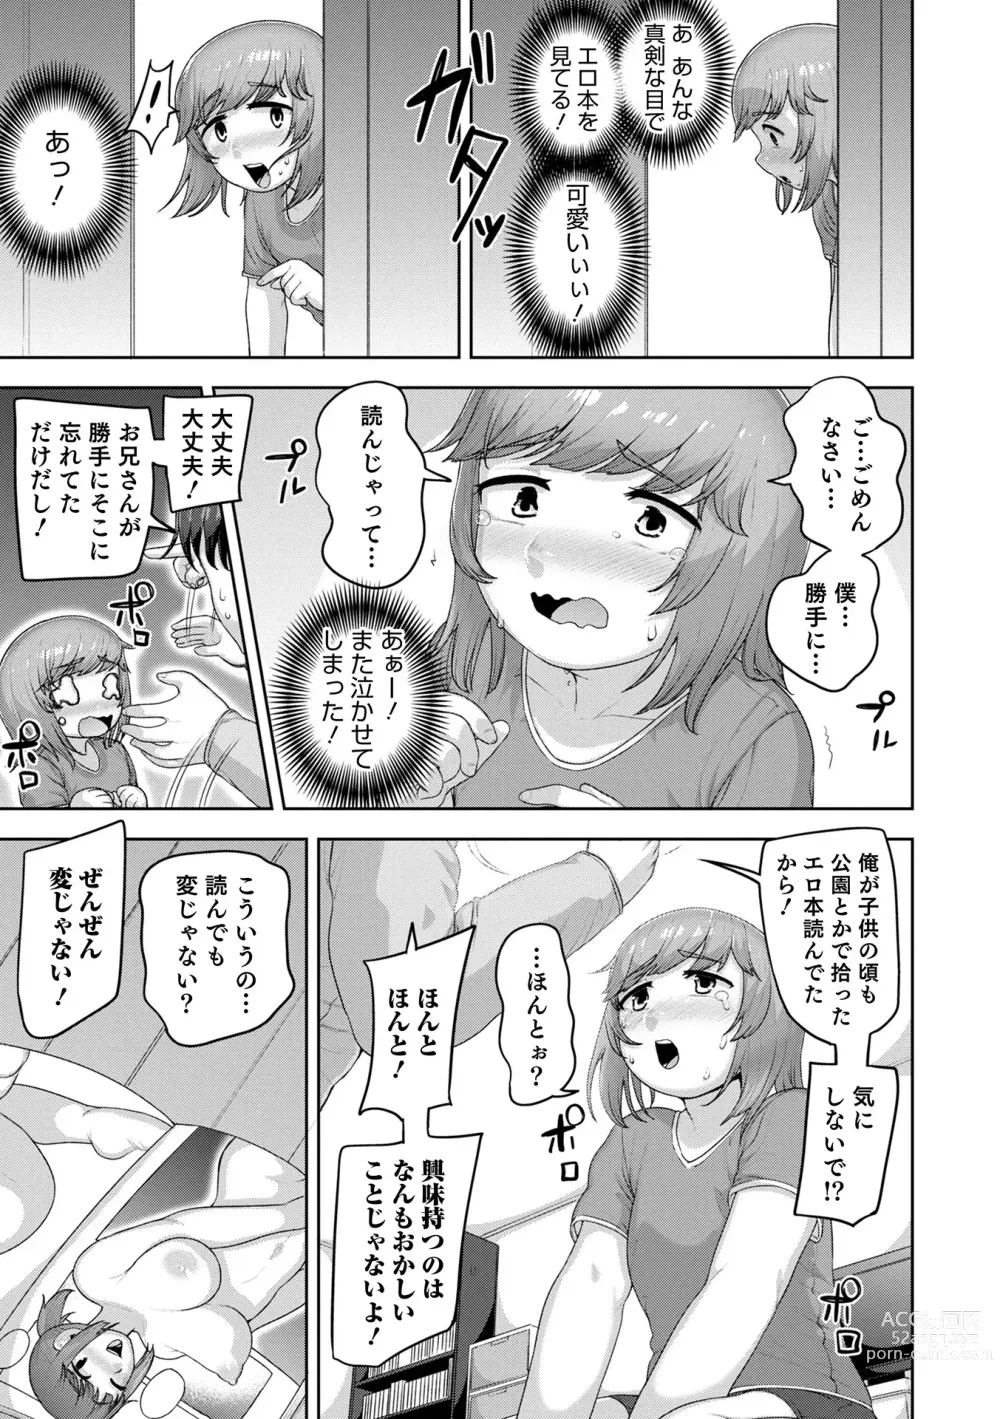 Page 11 of manga Muchiniku Otokonoko Tenshi’s